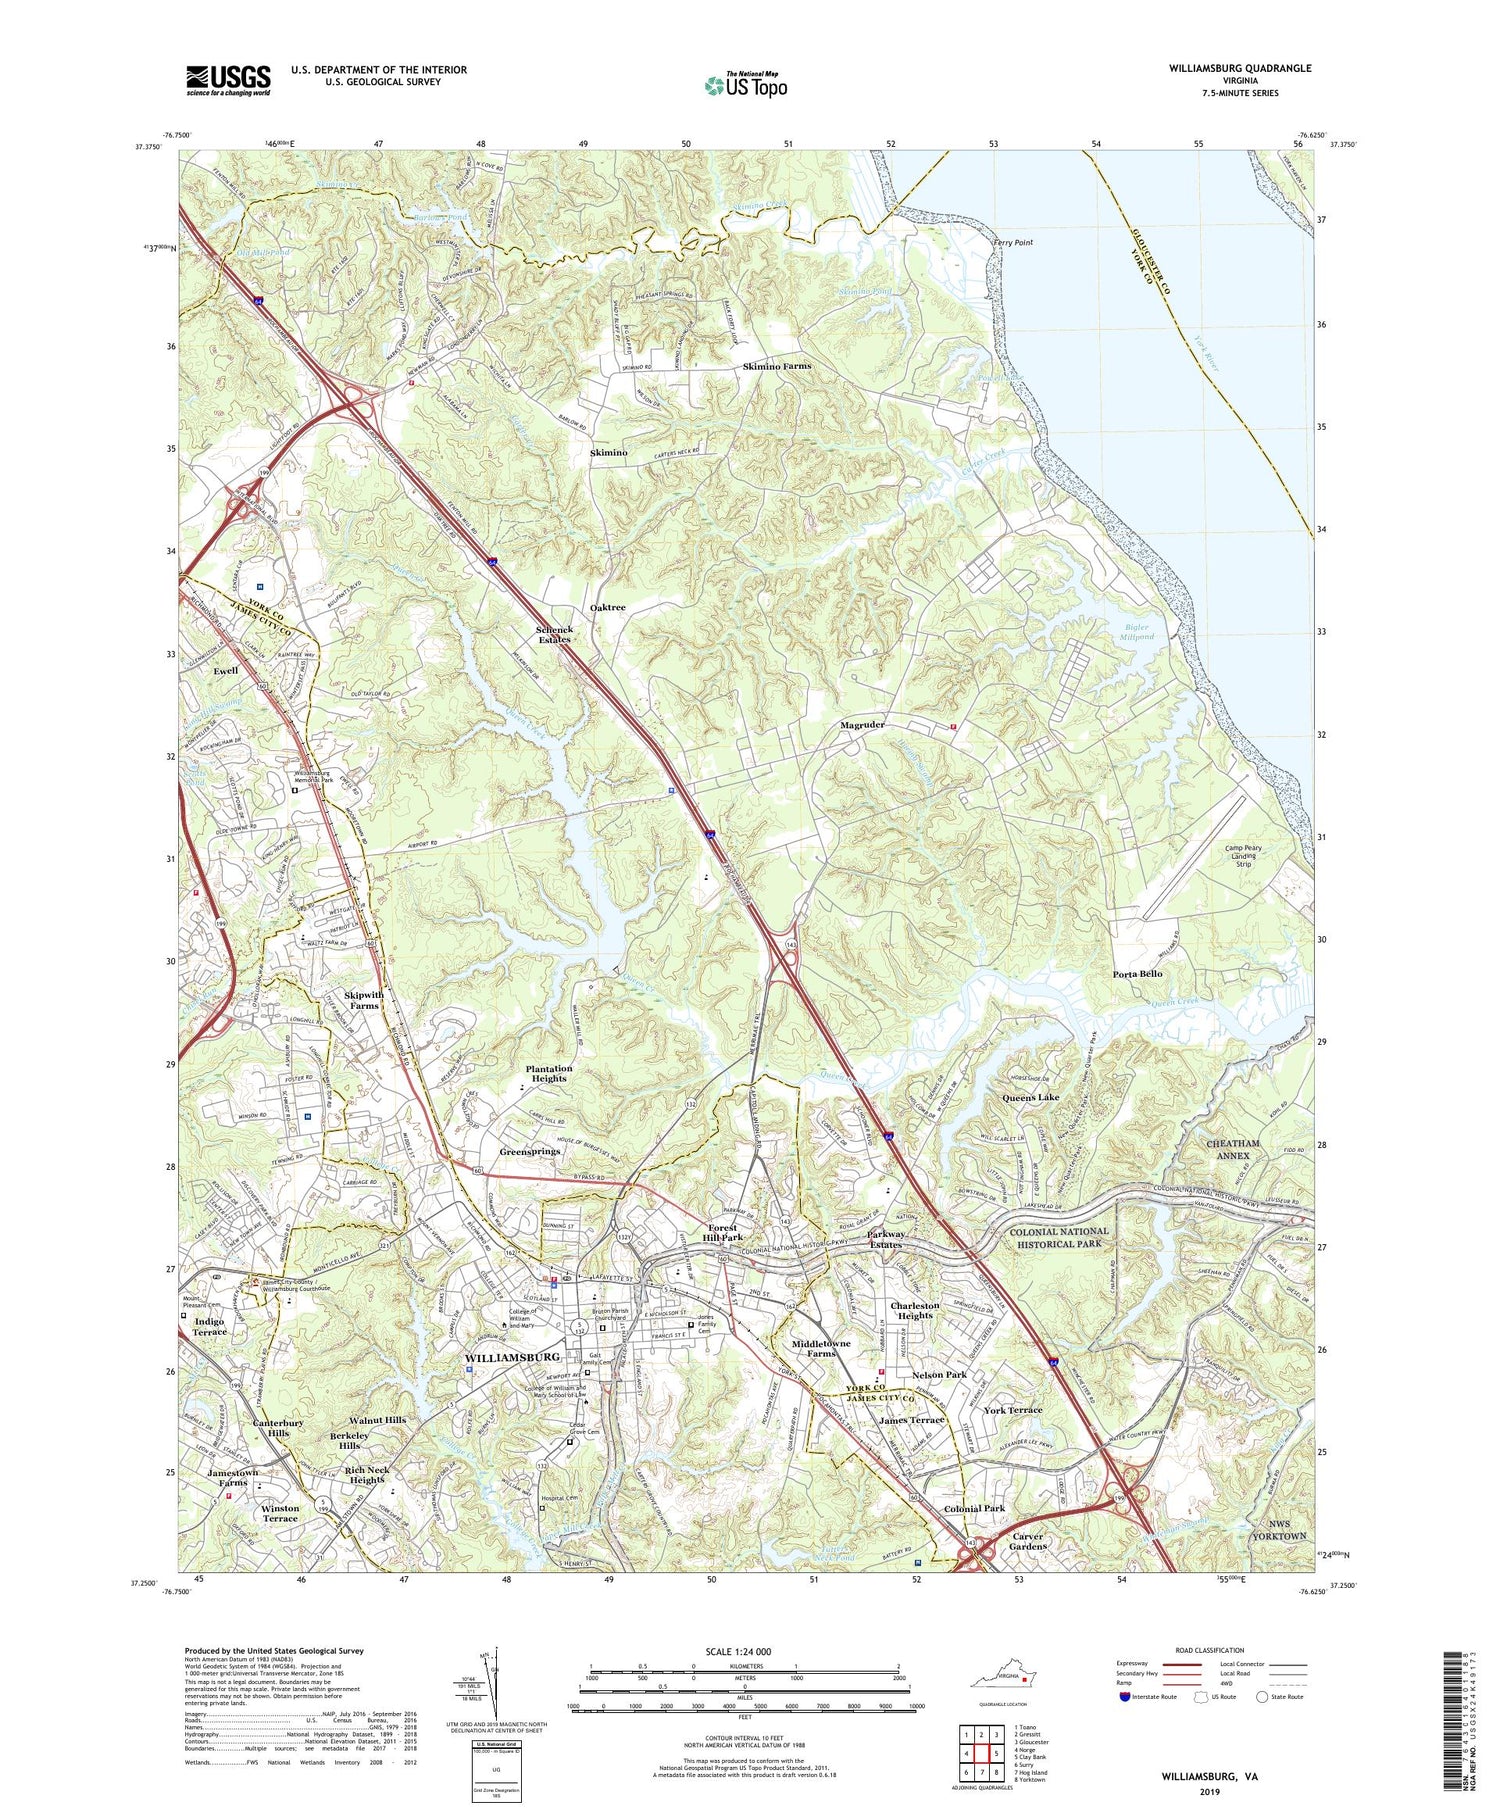 Williamsburg Virginia US Topo Map Image